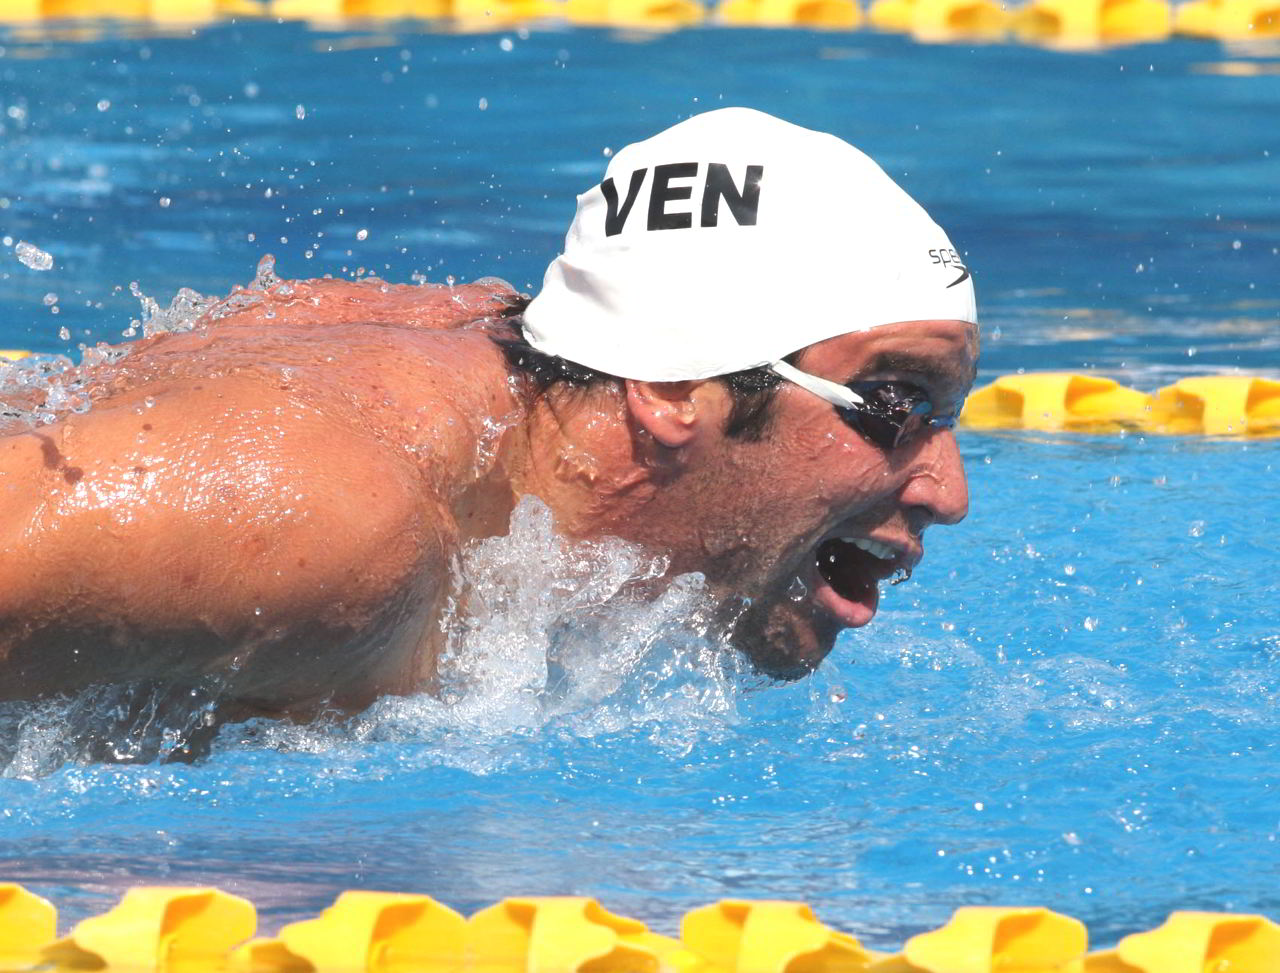 El venezolano logró clasificación a semifinales del Mundial de piscina corta 2016